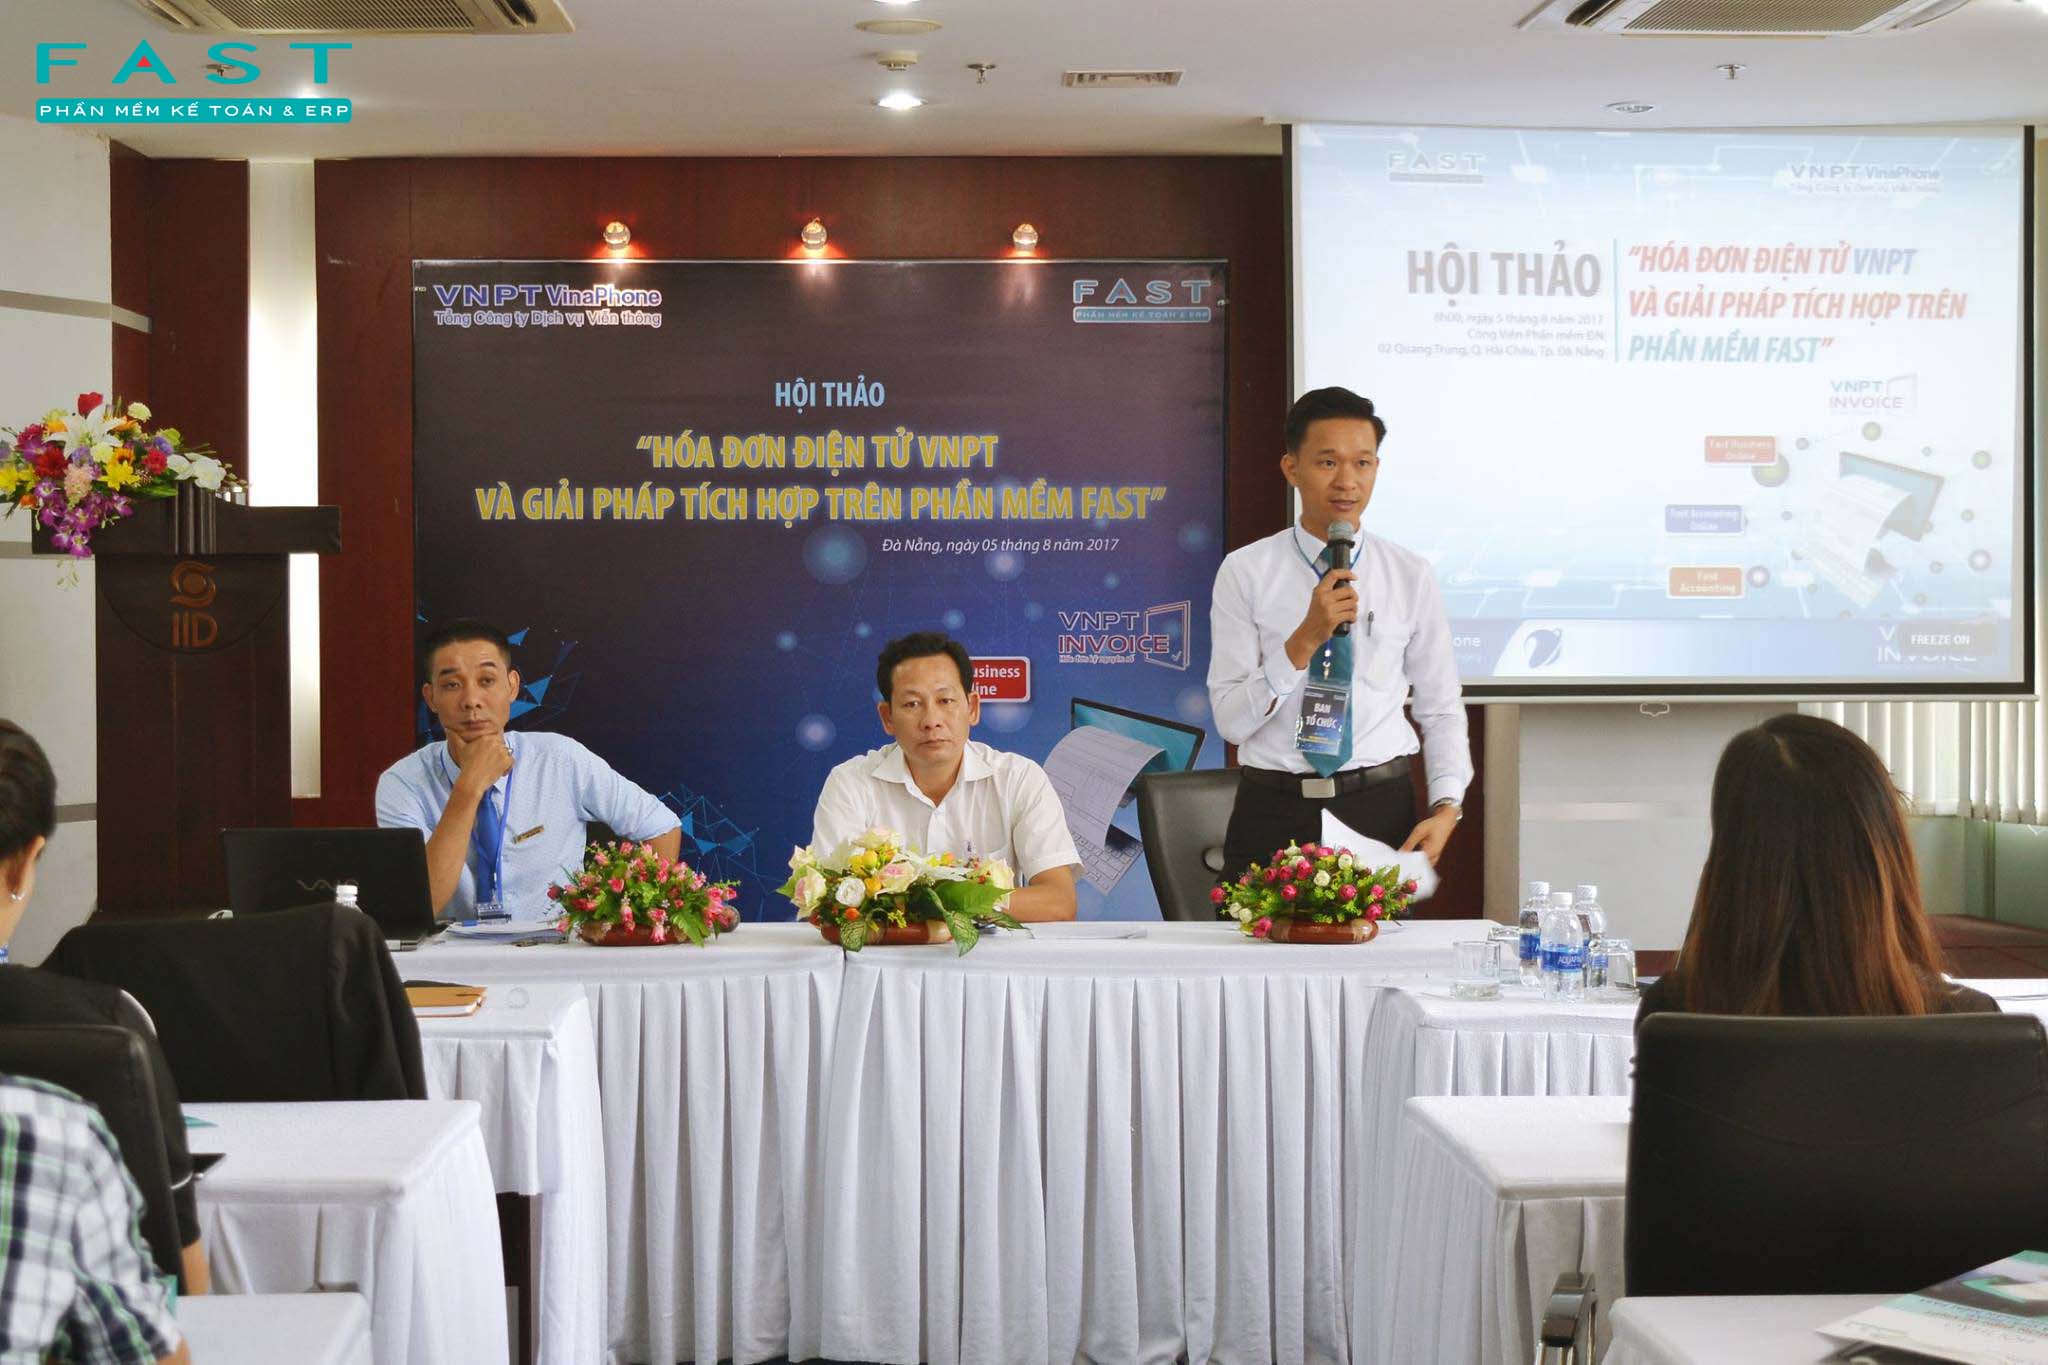 Hội thảo hóa đơn điện tử tại Đà Nẵng